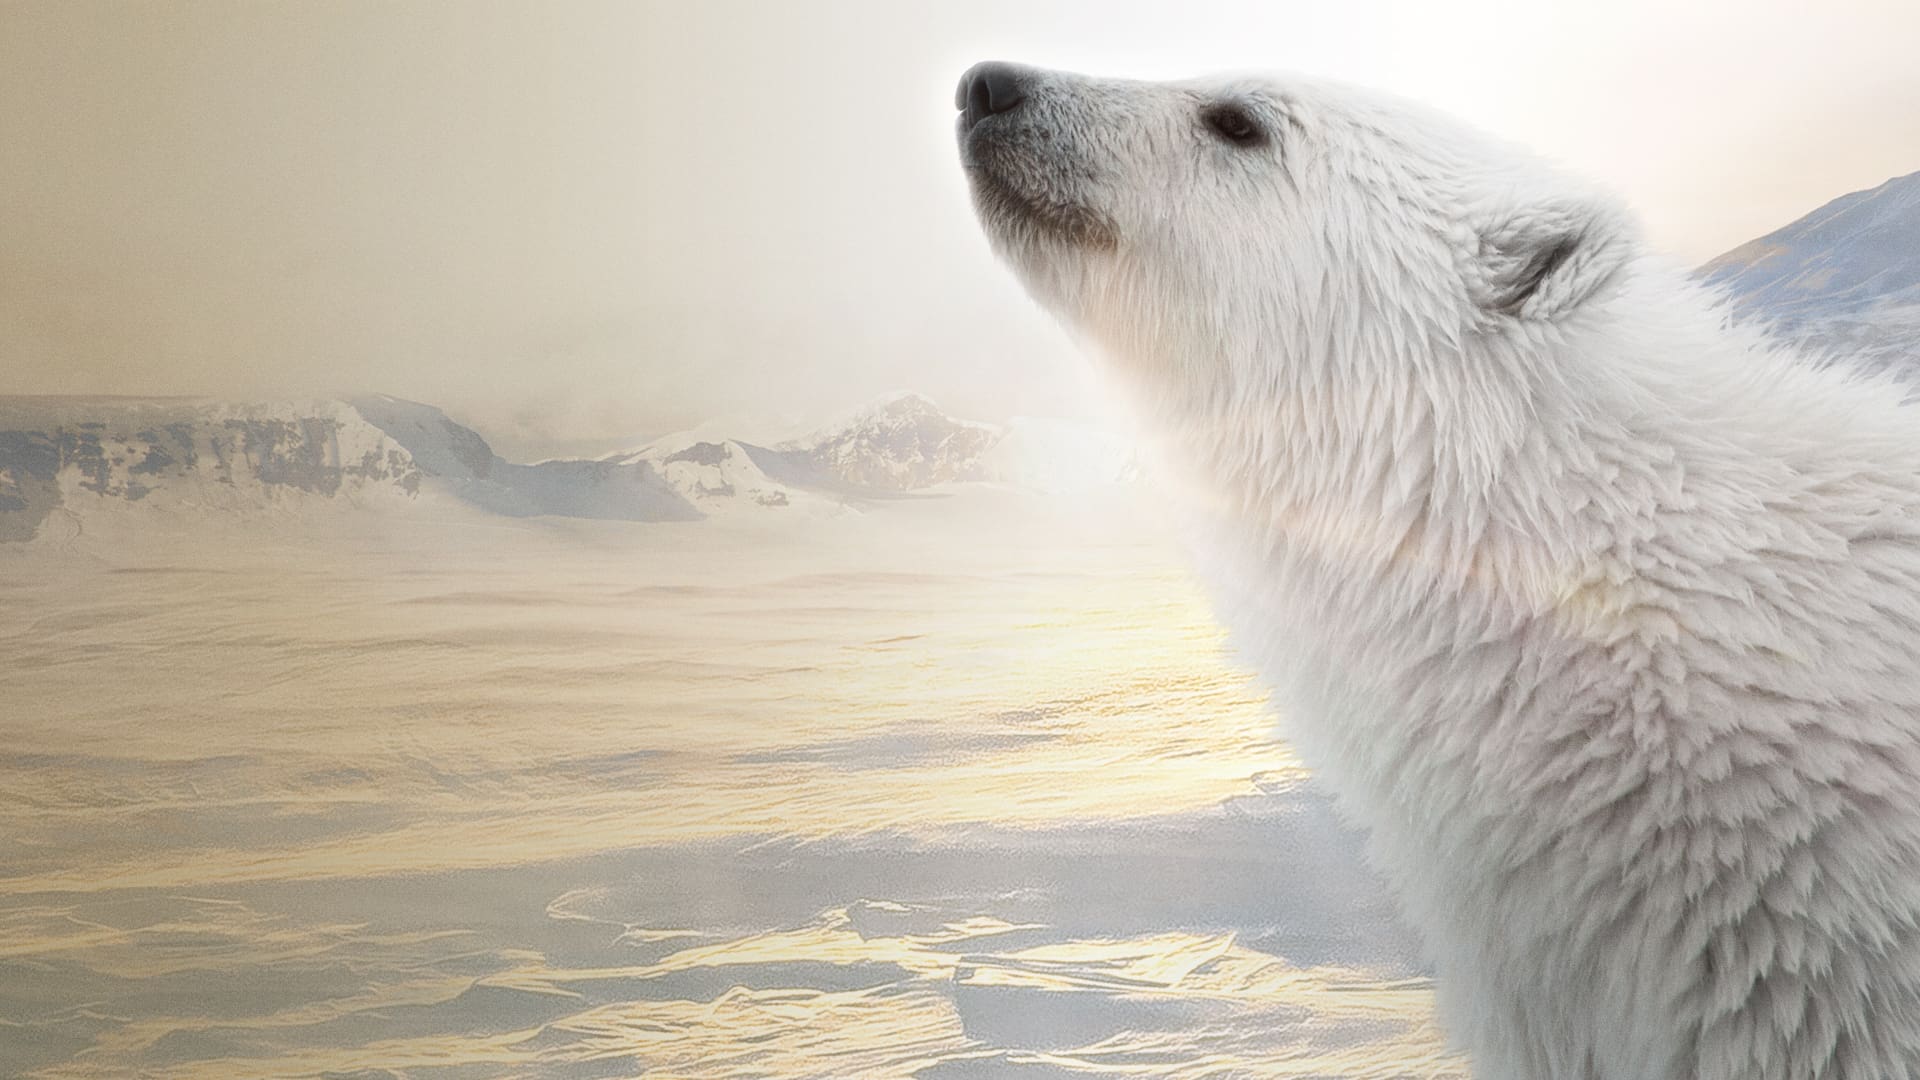 북극곰 (2022)